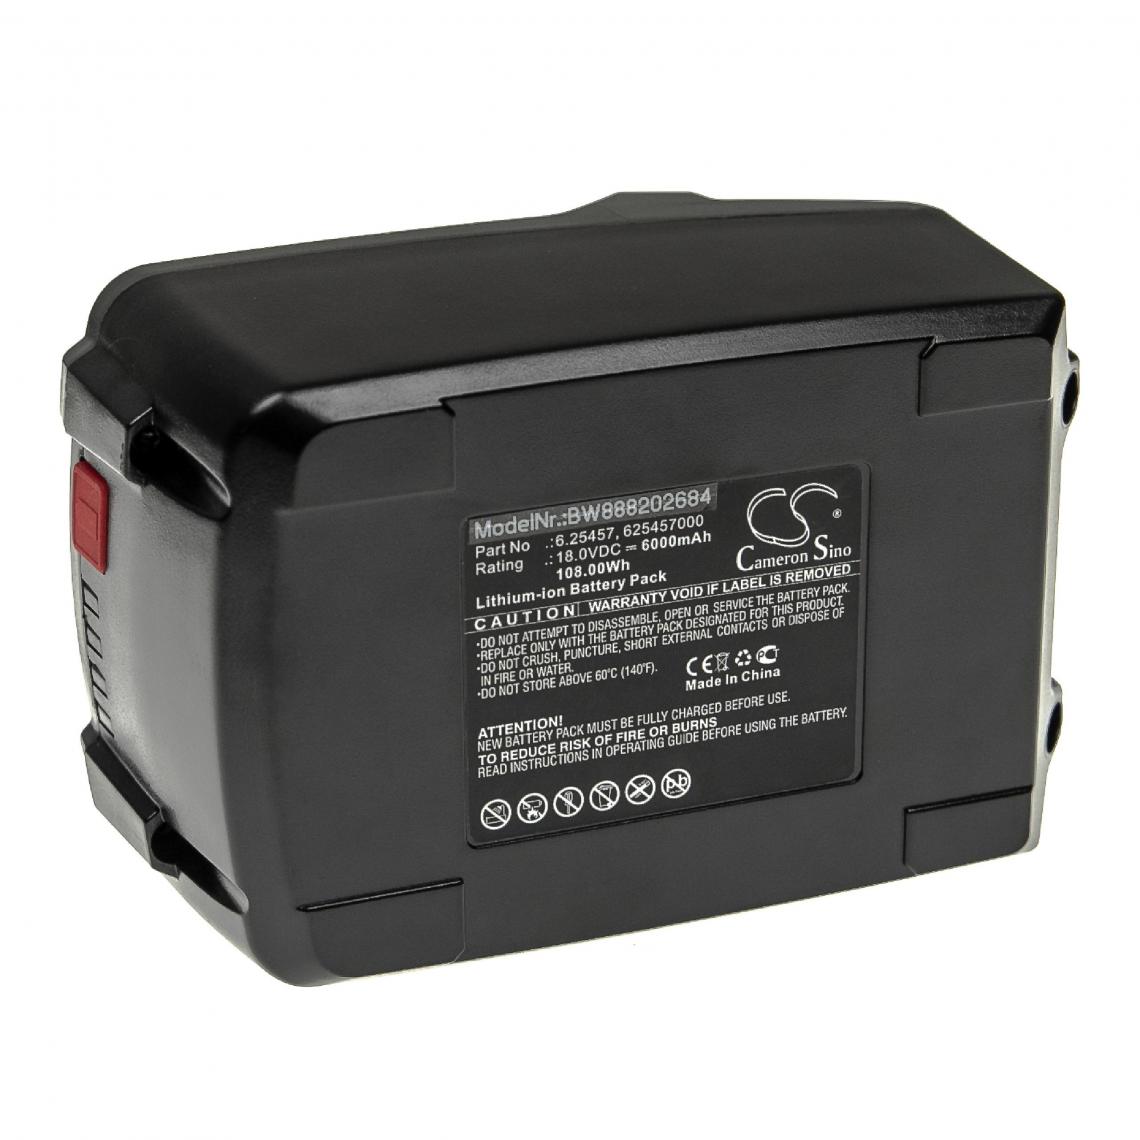 Vhbw - vhbw Batterie compatible avec Metabo SB 18 LT BL 602316550, SB 18 LT BL 602316670 outil électrique (6000mAh Li-ion 18 V) - Autre appareil de mesure